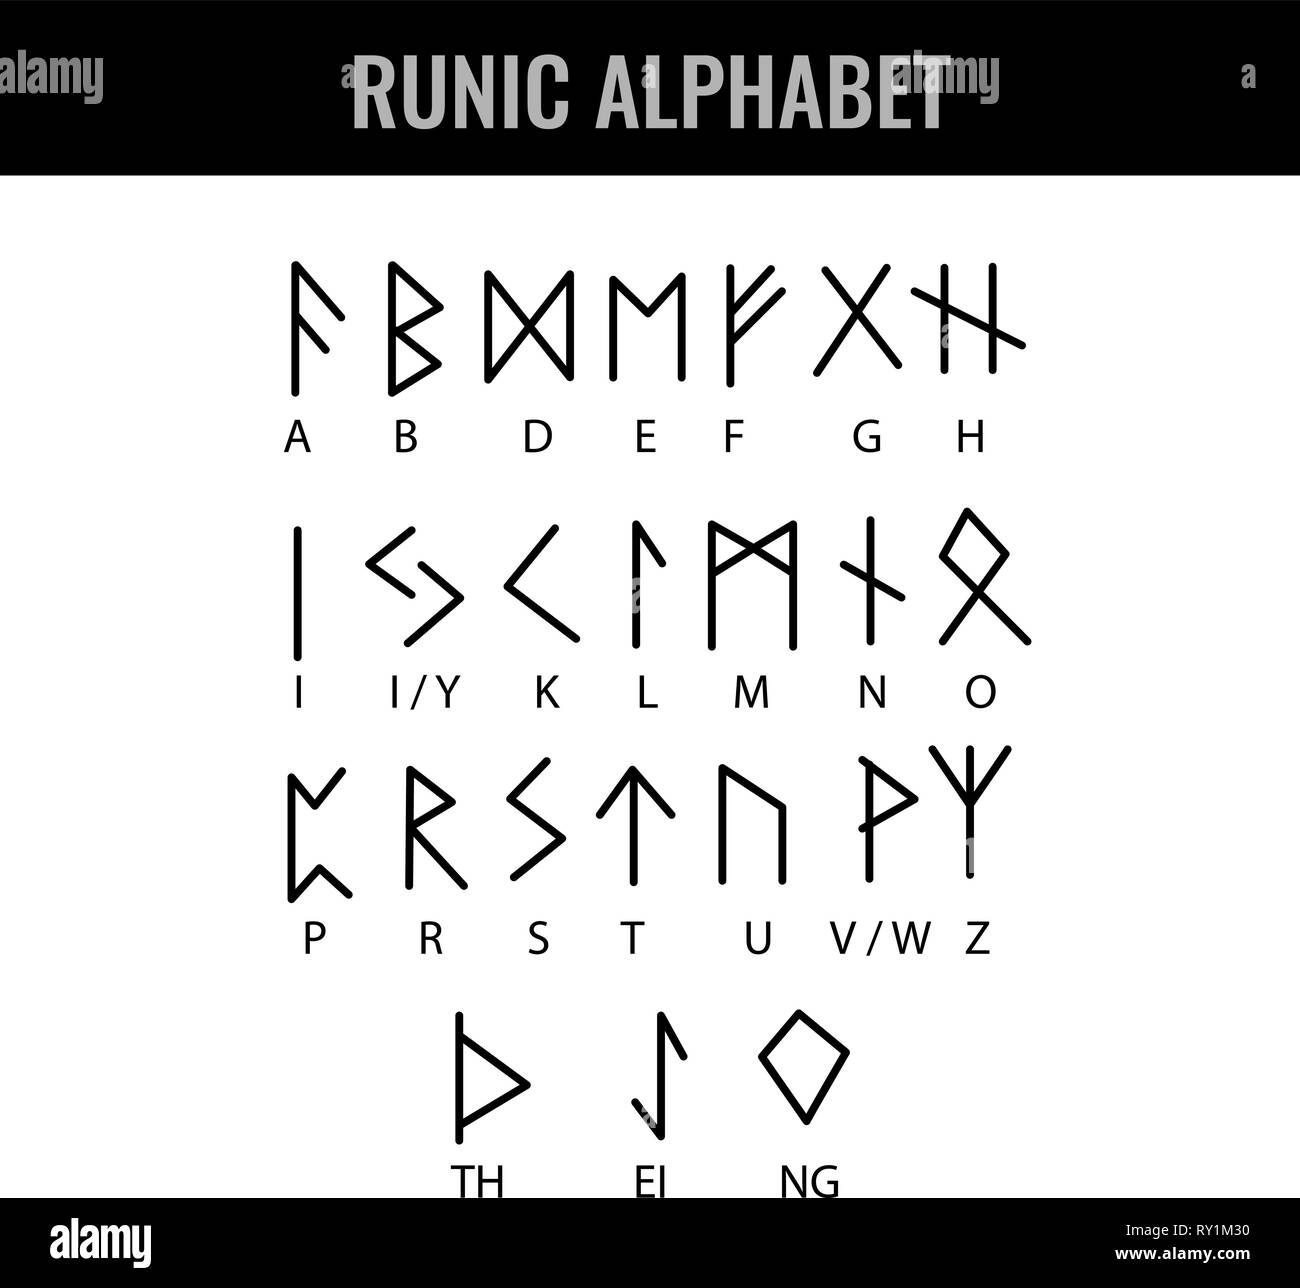 L'alphabet runique et sa lettre d'interprétation. Vector illustration. Illustration de Vecteur